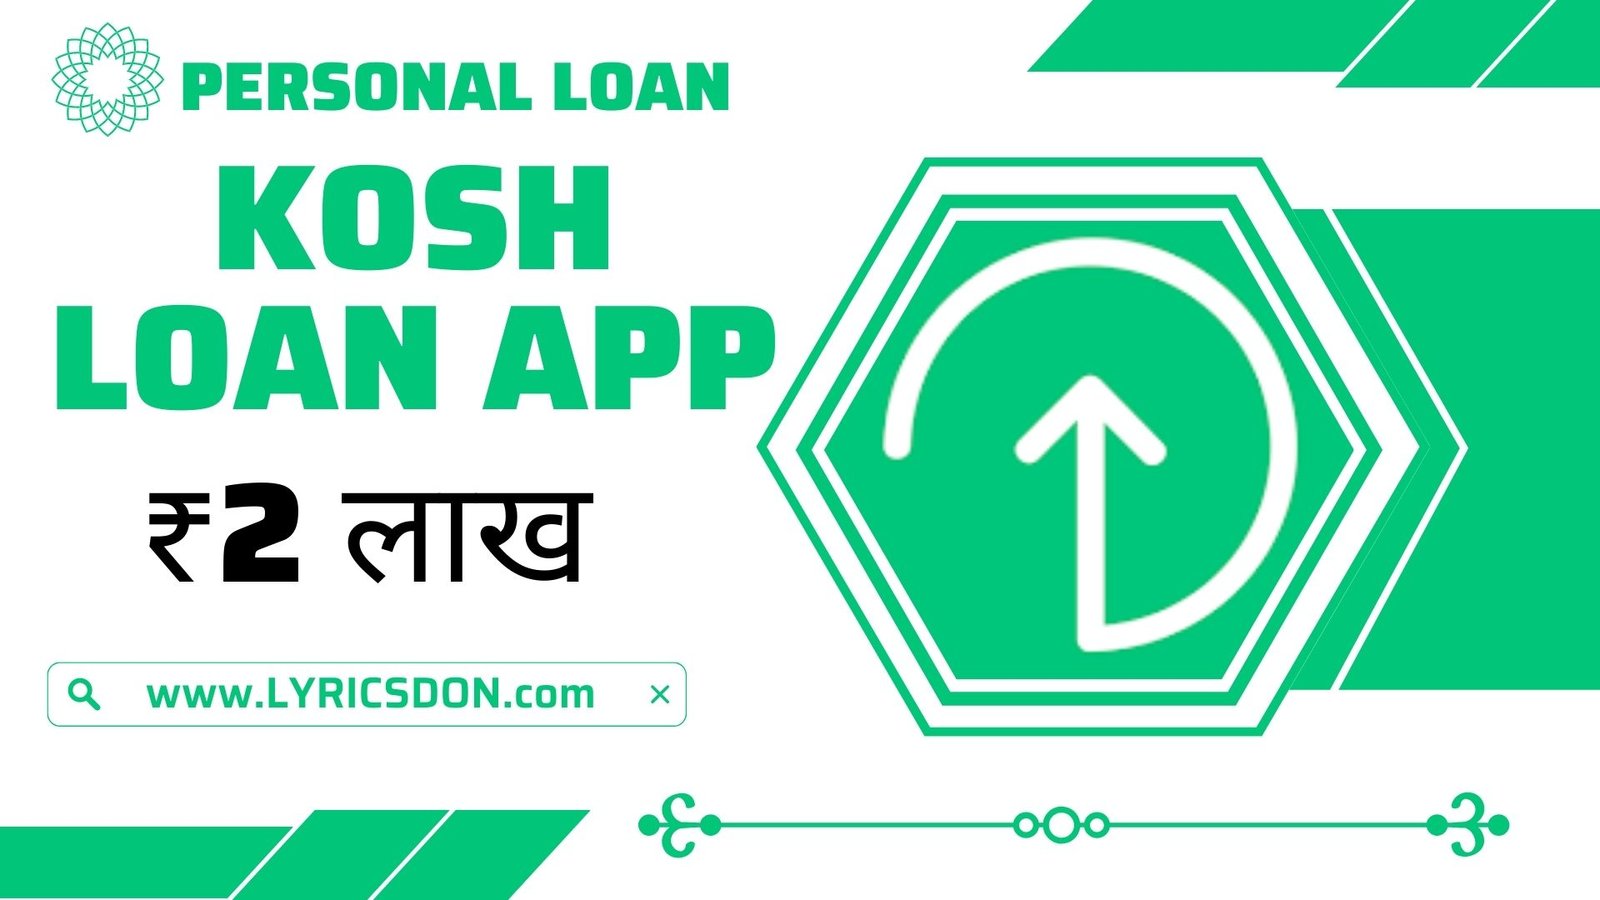 Kosh Loan App Loan Amount